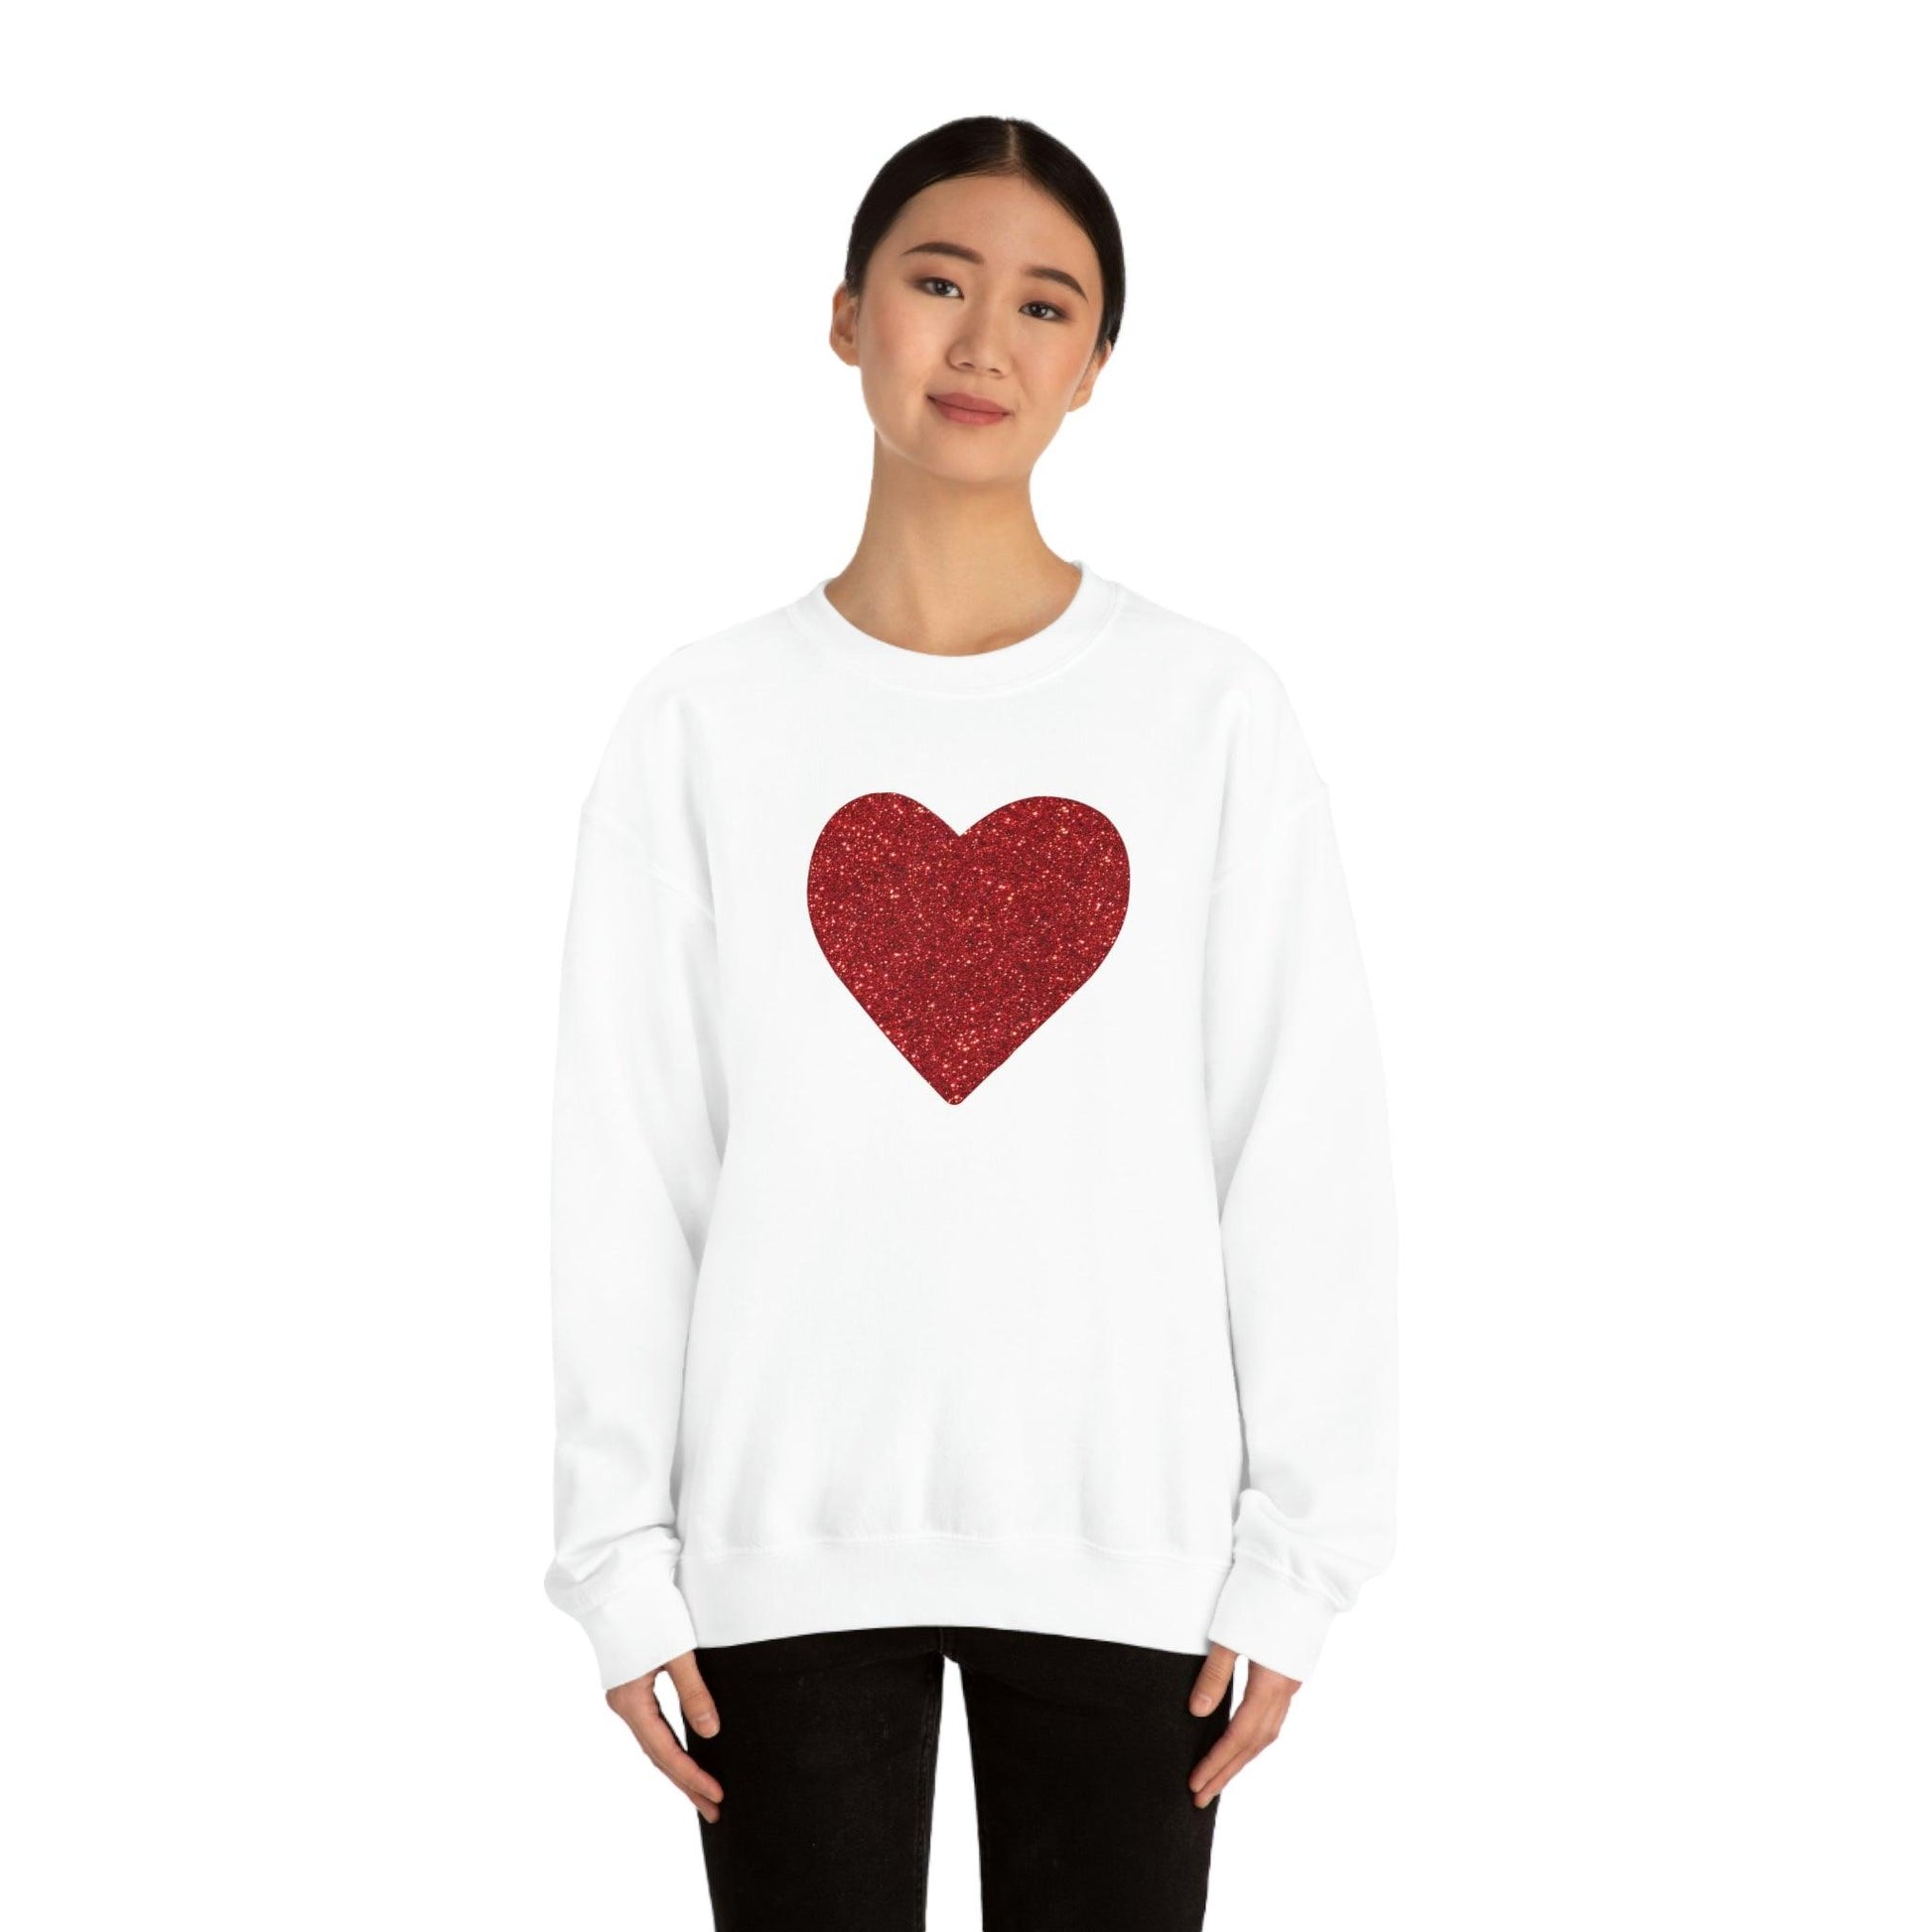 Heart Sweatshirt Love sweatshirt Love Shirt Cute Love Shirt with Heart Valentine sweatshirt - Matching Love shirt Girlfriend gift Boyfriend - Giftsmojo